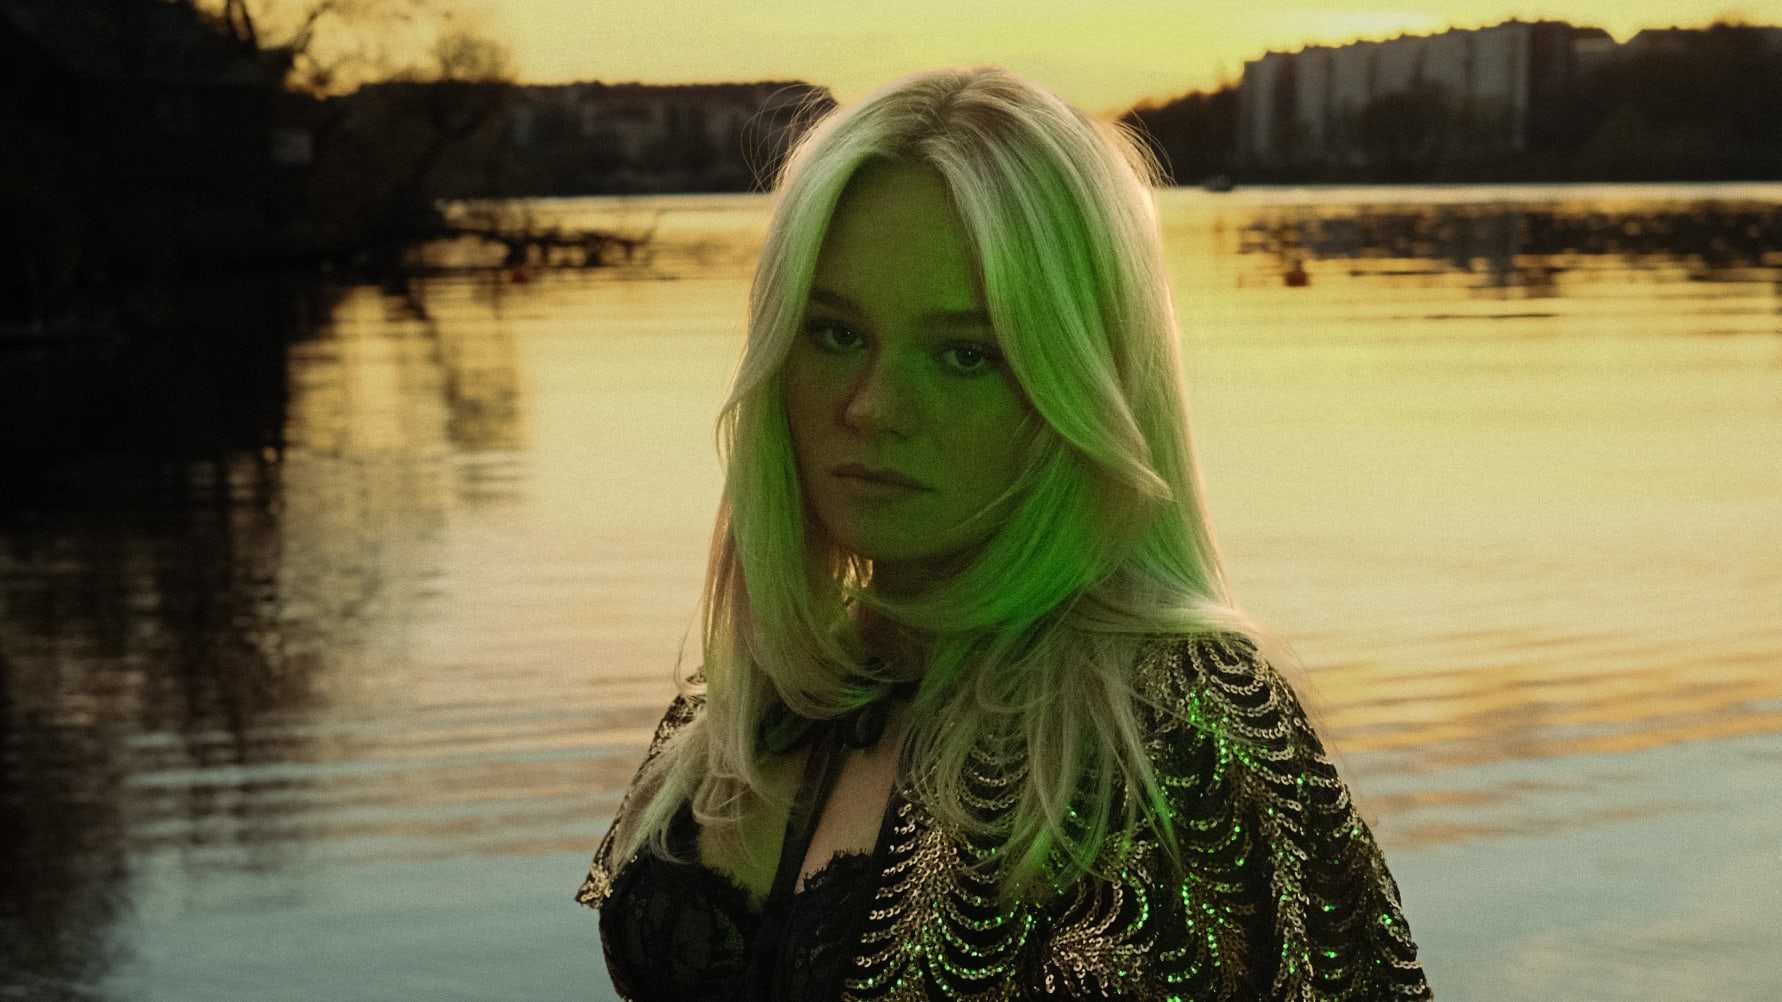 Sveriges nya poplöfte FILIPPA släpper debut-EP:n “Beroende” på fredag